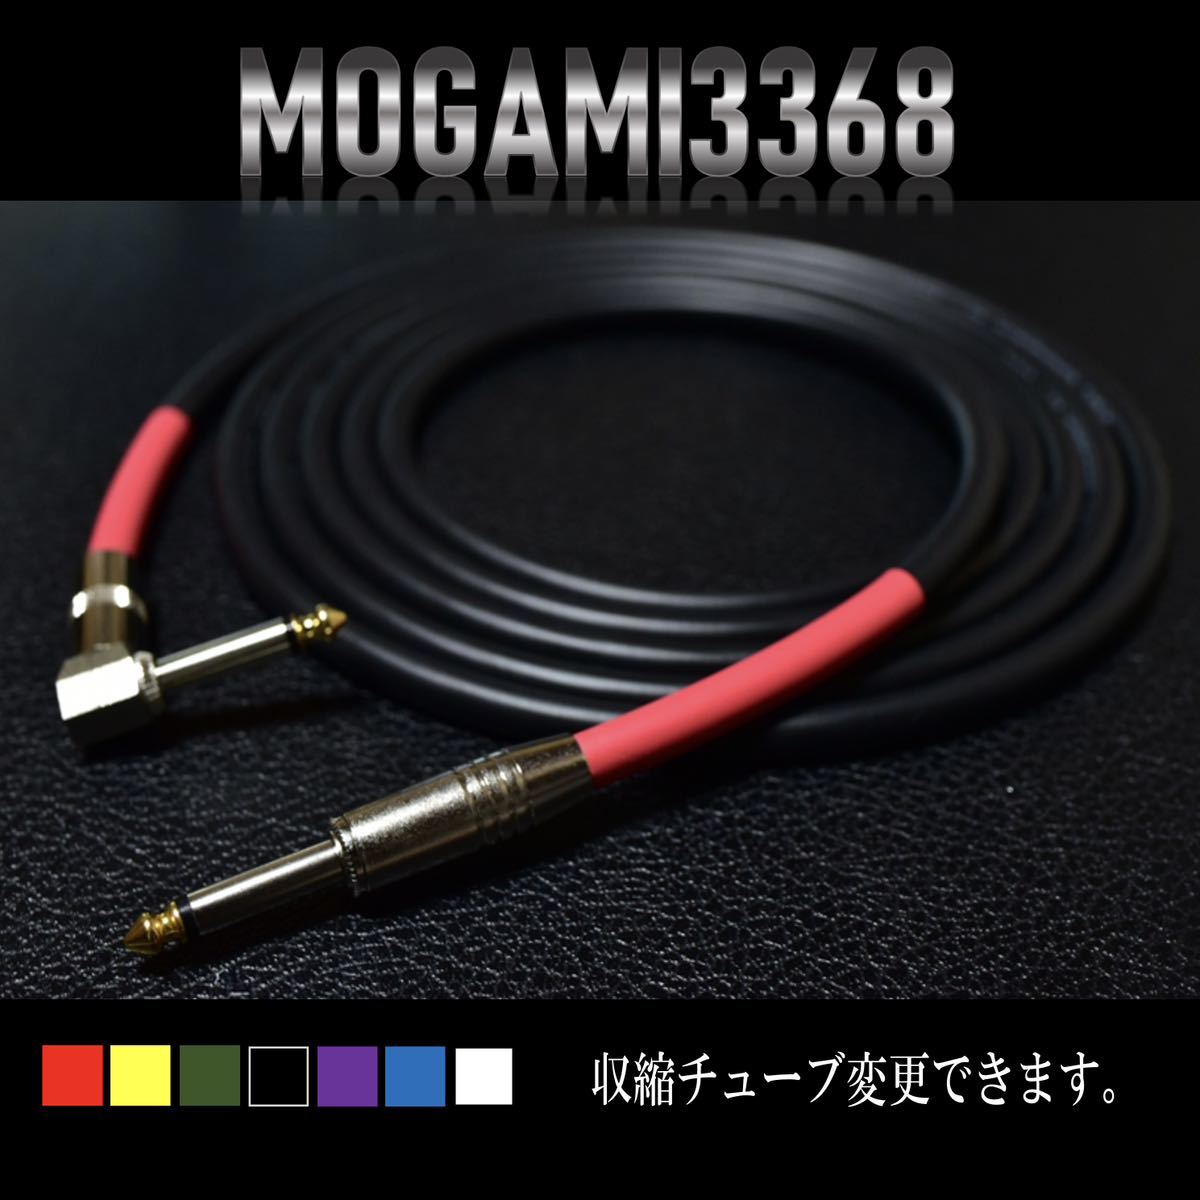 『MOGAMI モガミケーブル#3368』ギターベースシールドL-S約3m_画像3